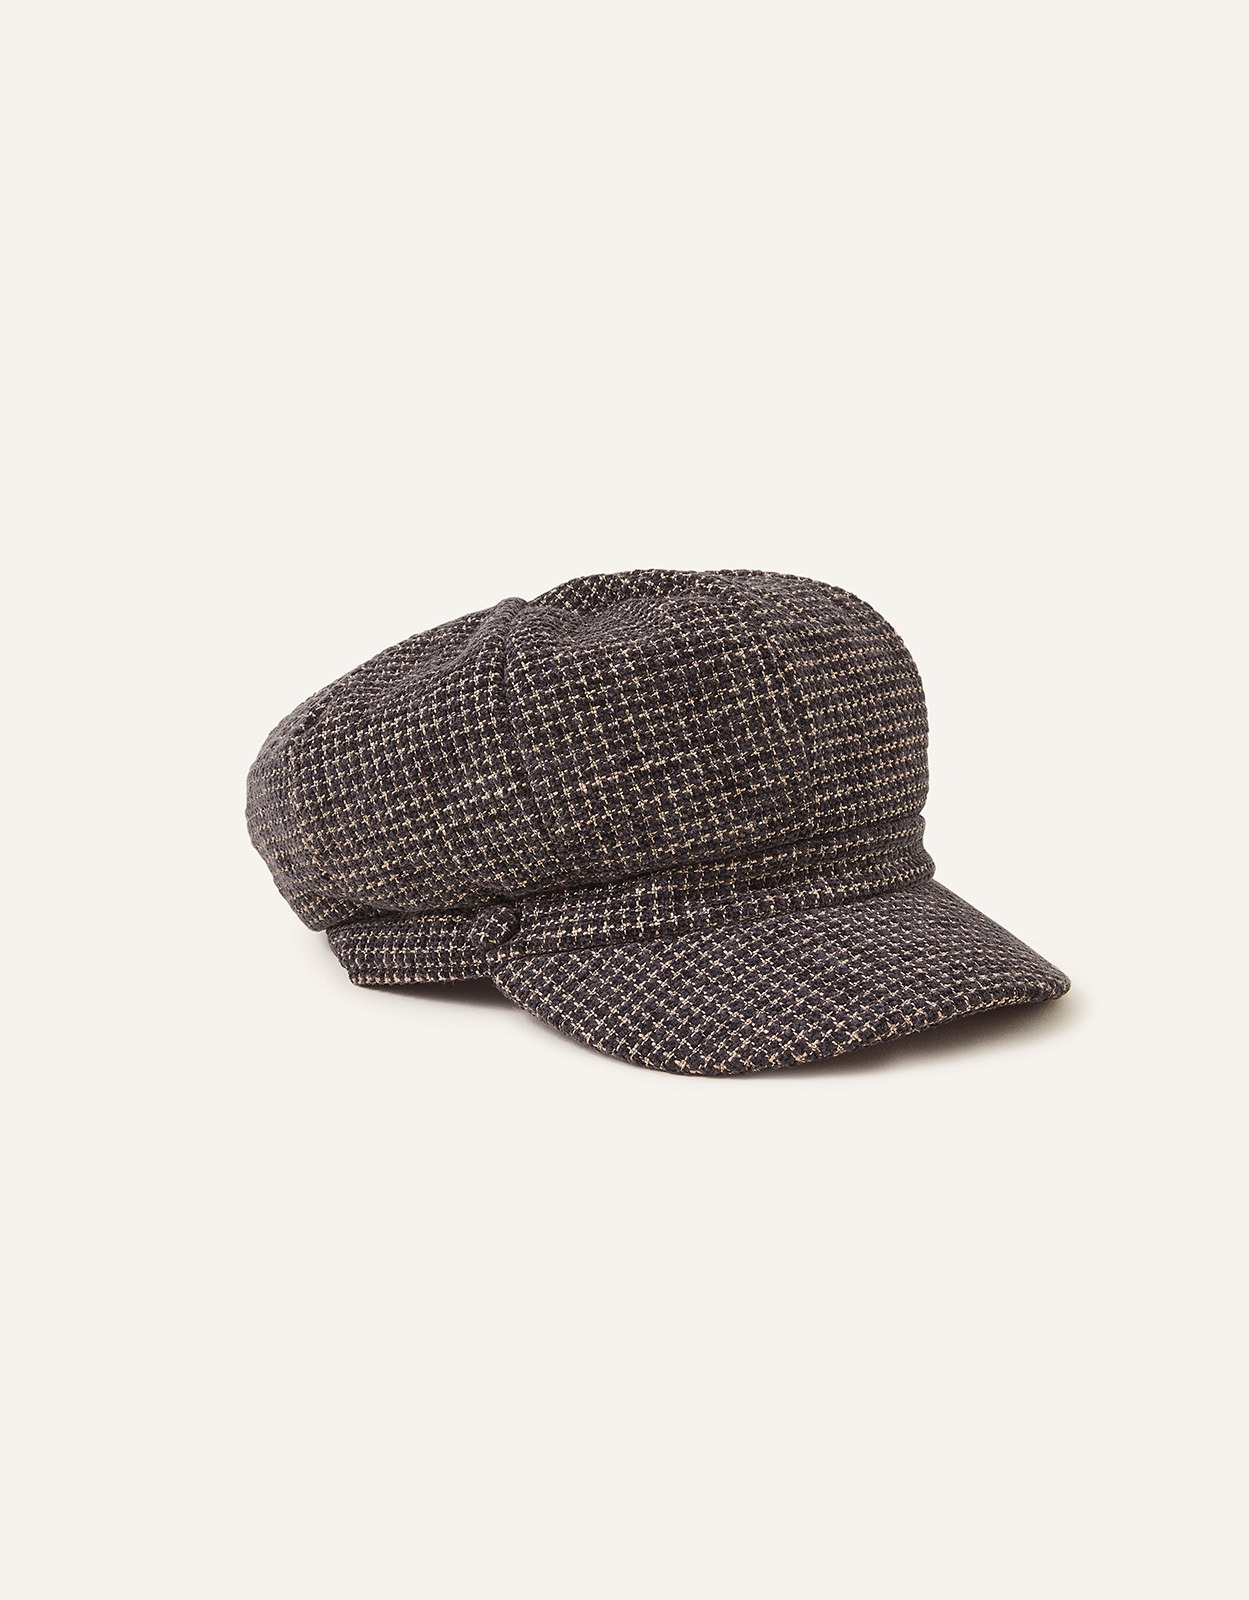 Accessorize Men's City Baker Boy Hat, Size: 57cm